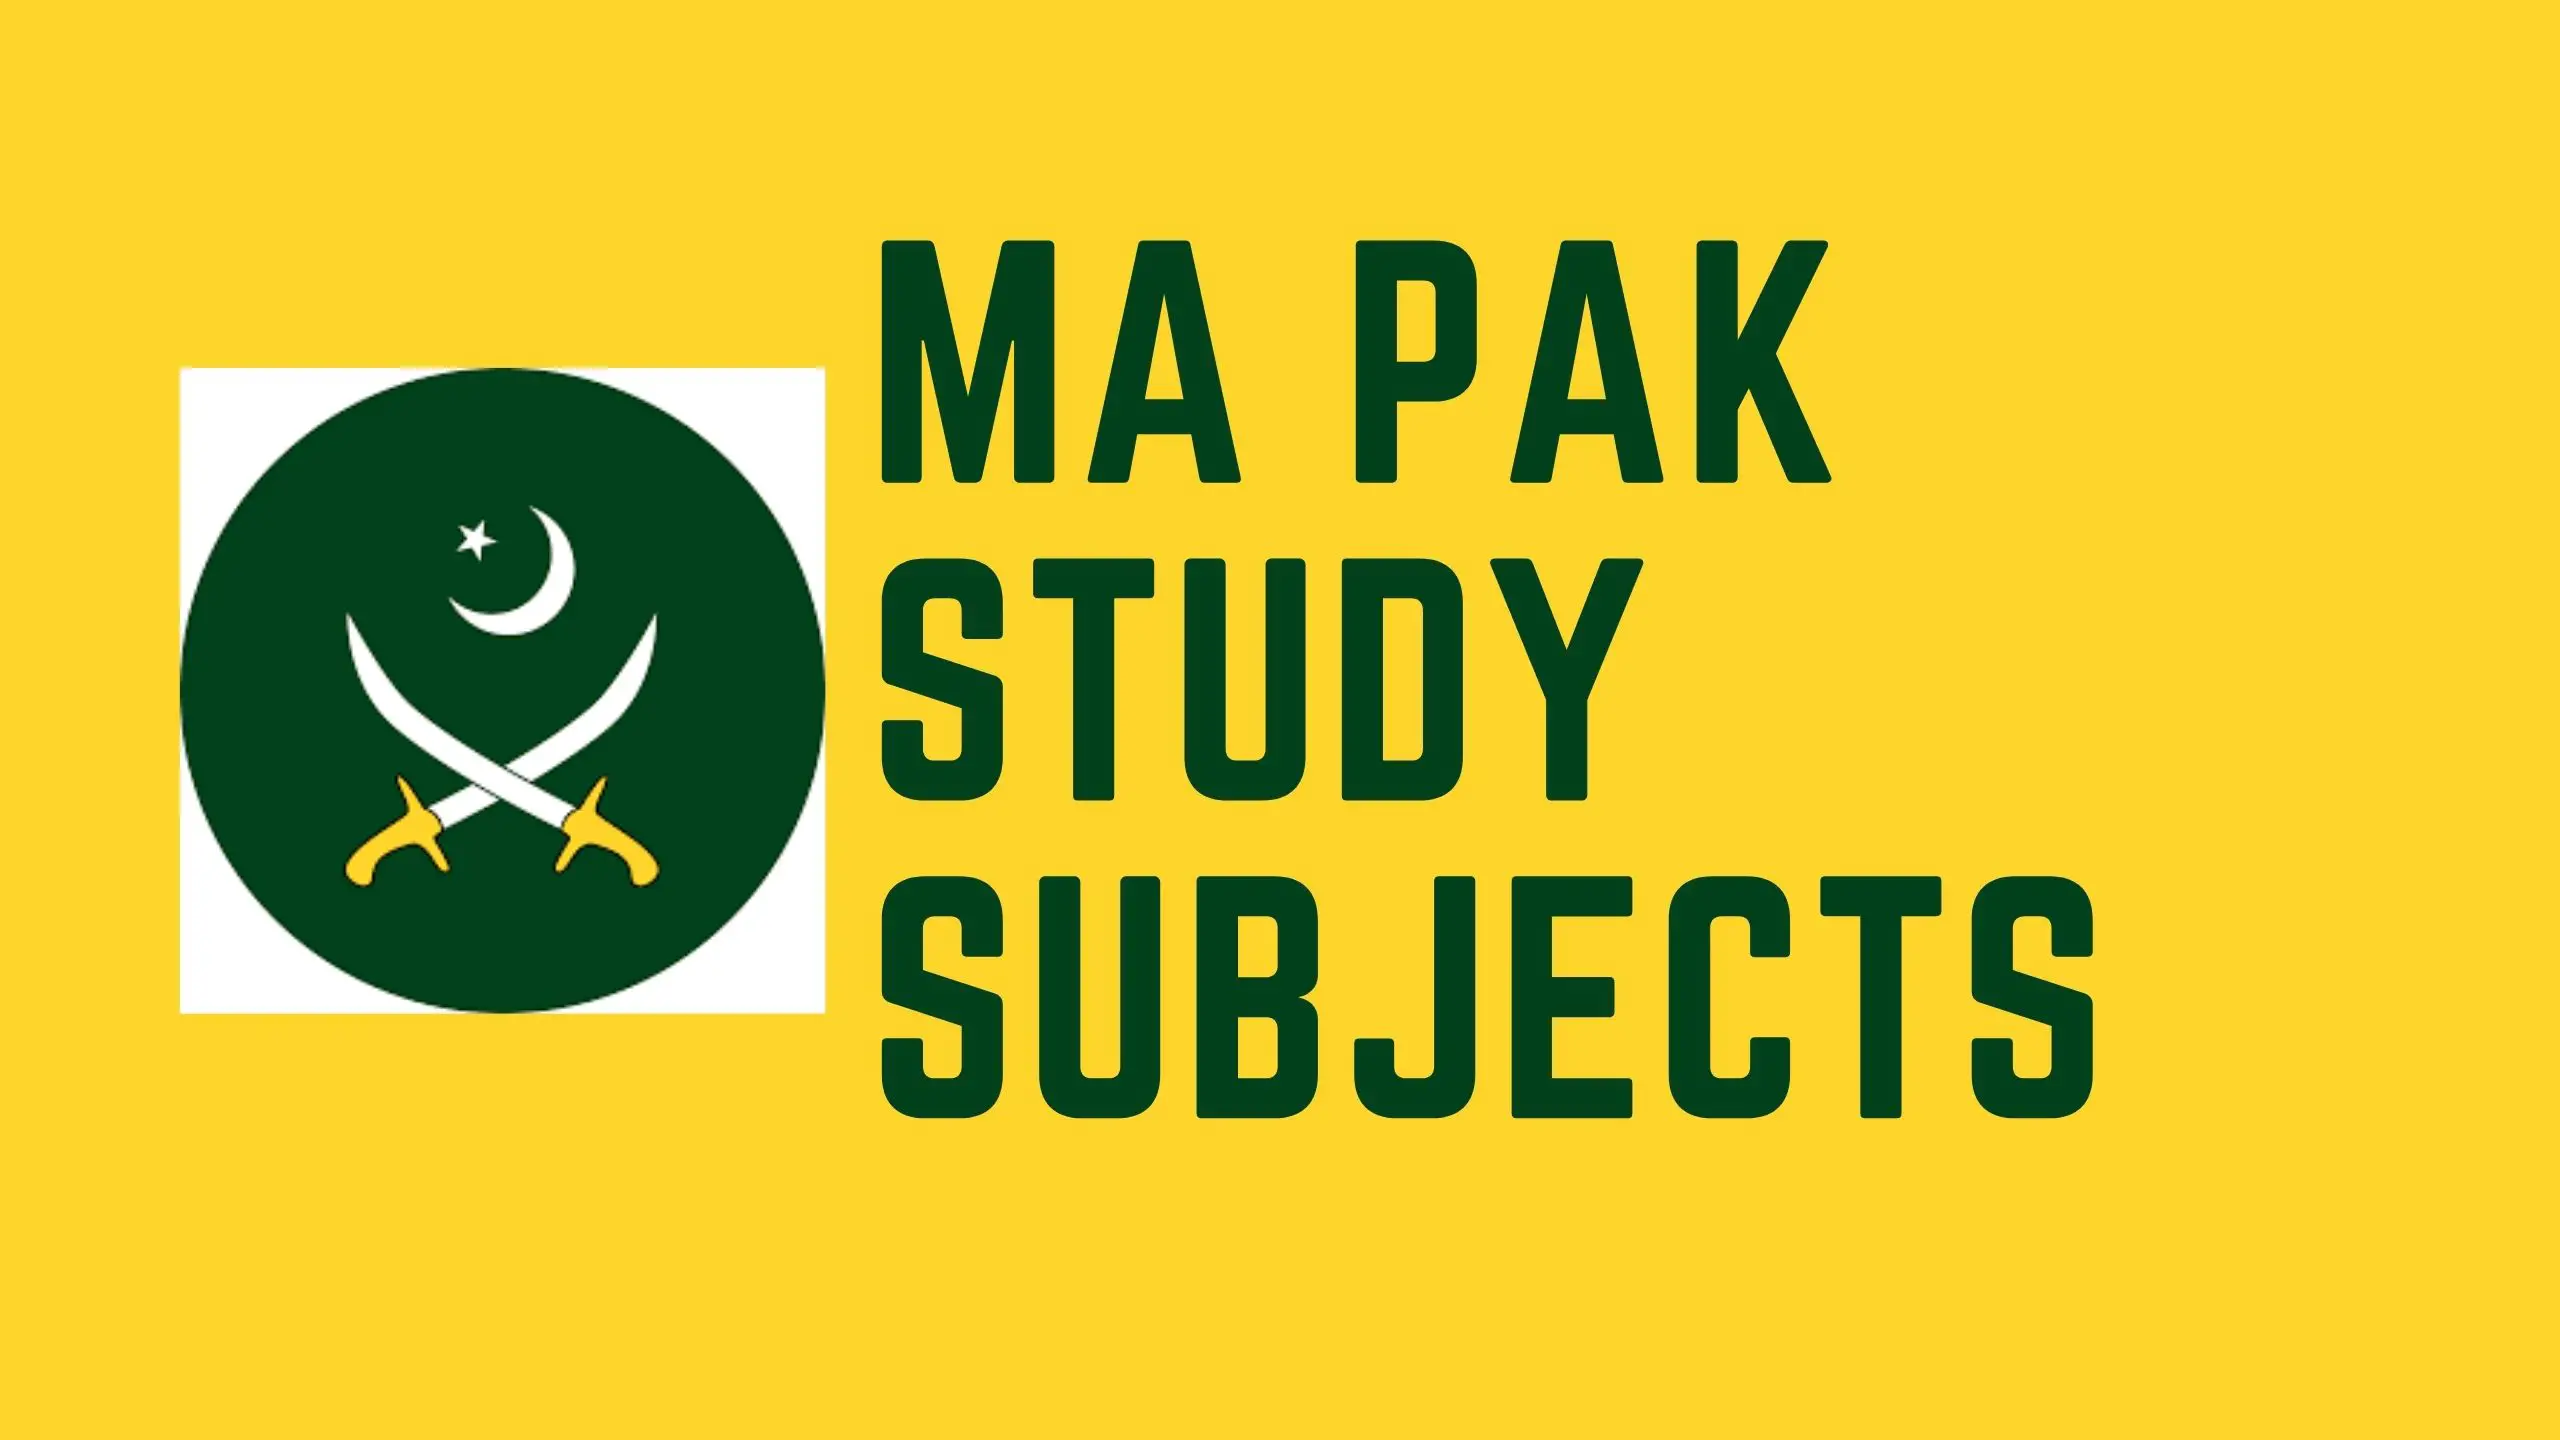 ma pak study subjects